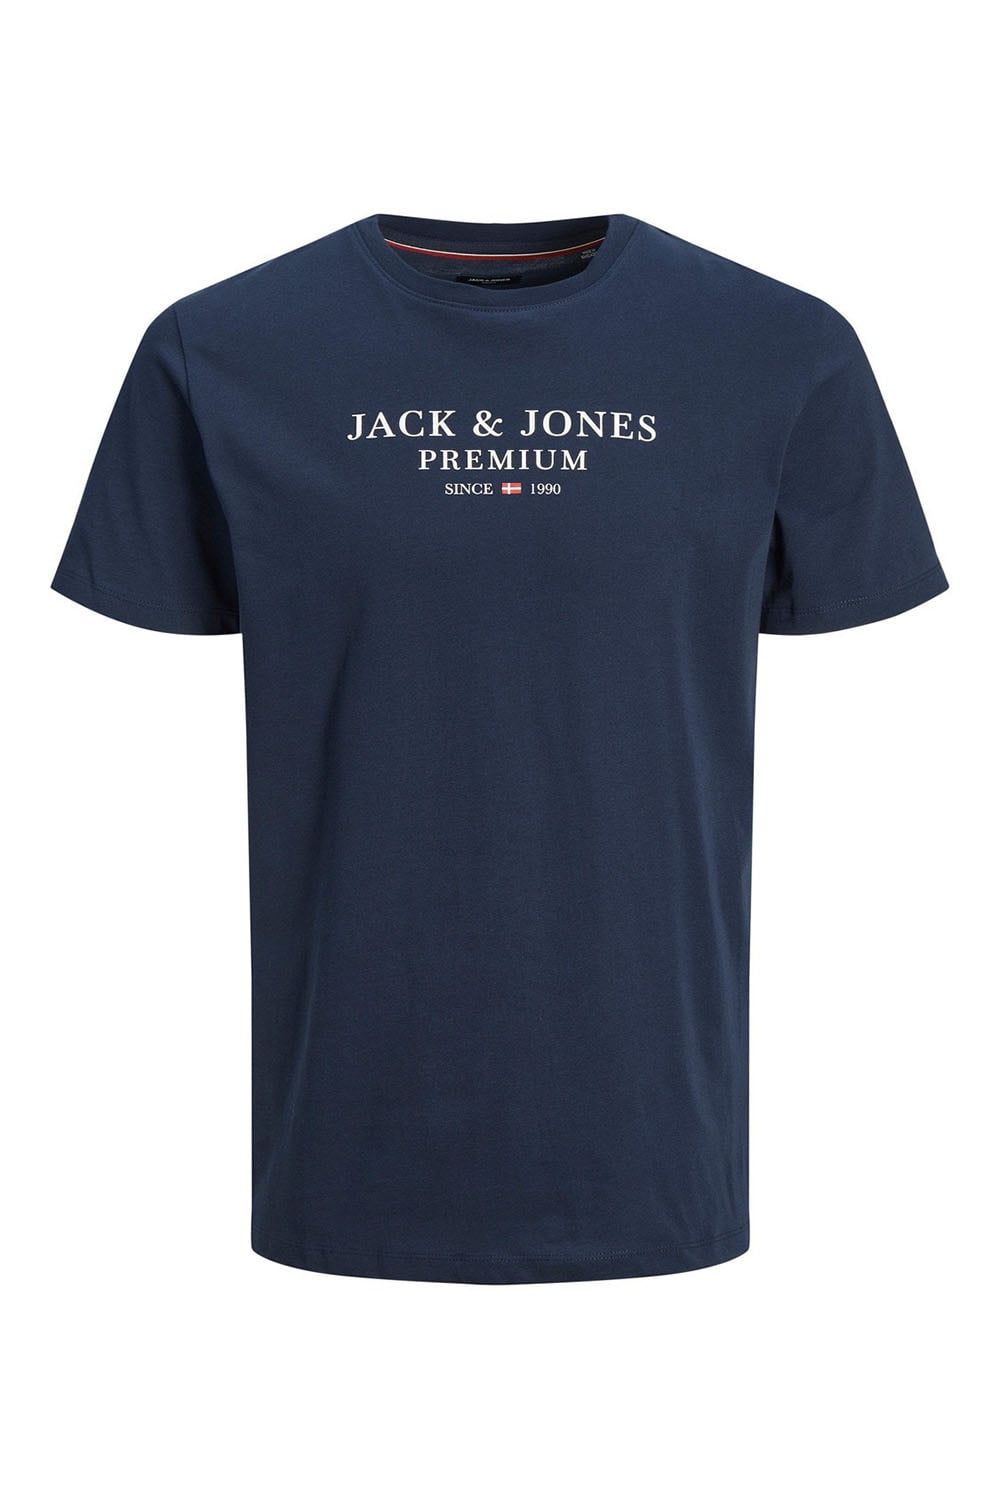 Ανδρική Κοντομάνικη Μπλούζα Jack & Jones 12217167 Navy